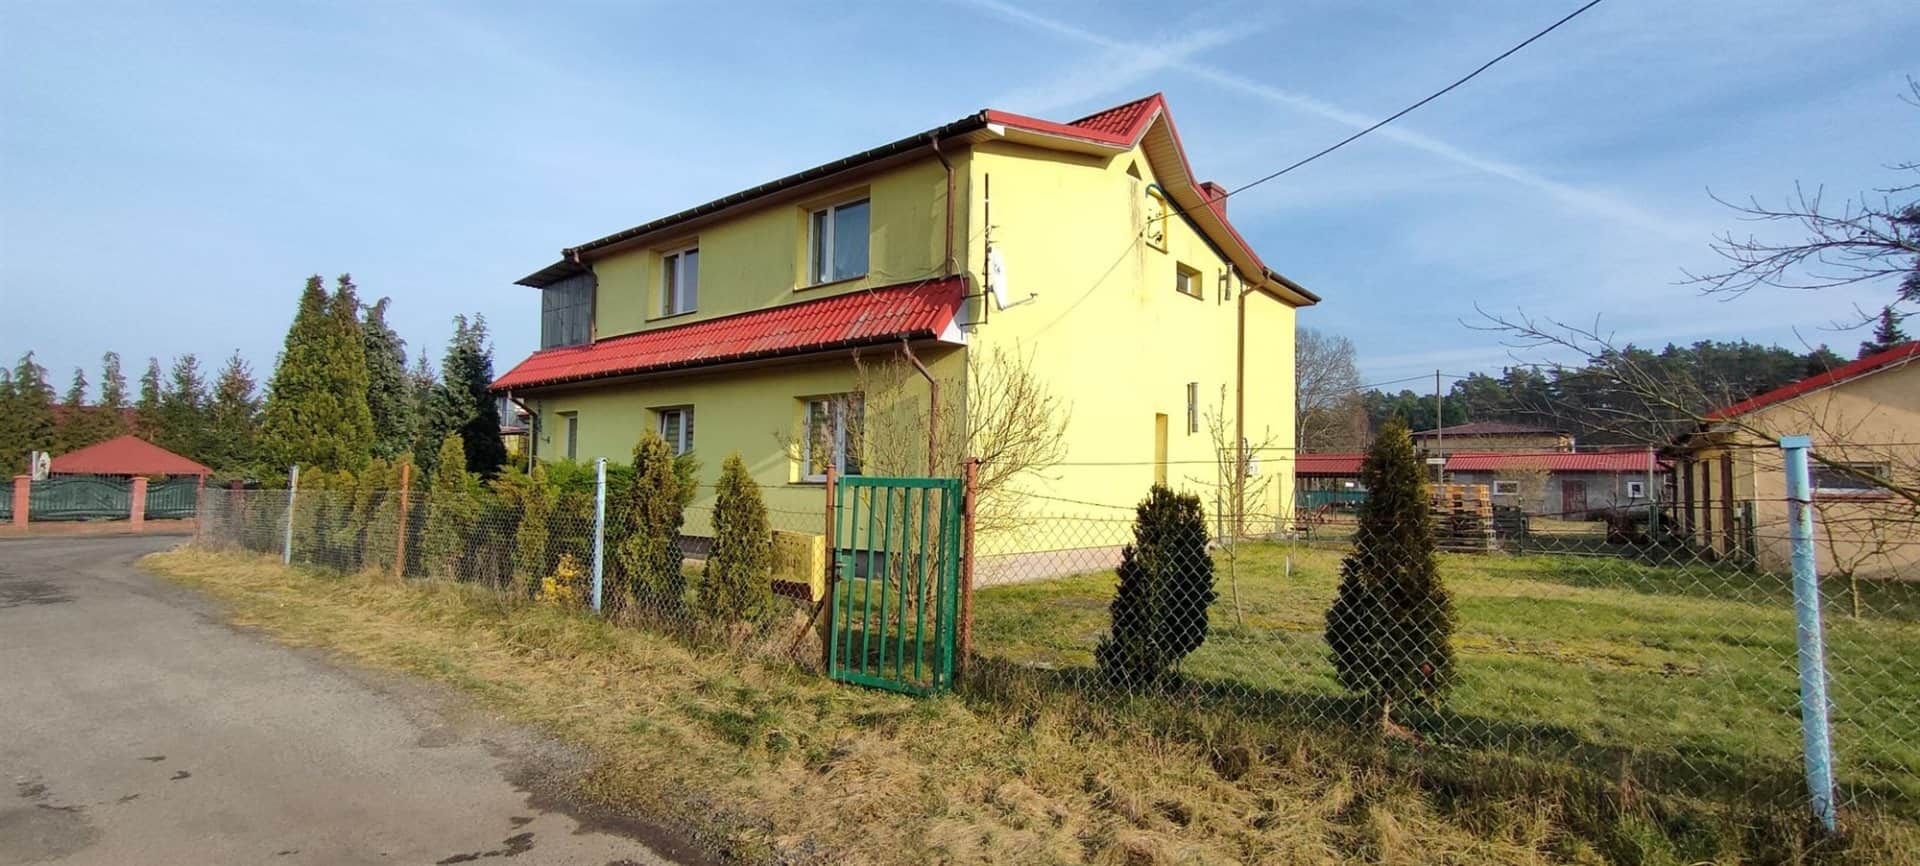 dom na sprzedaż - Szczecin, Wielgowo - ID PROM-DS-781 | swiatnieruchomosci.pl